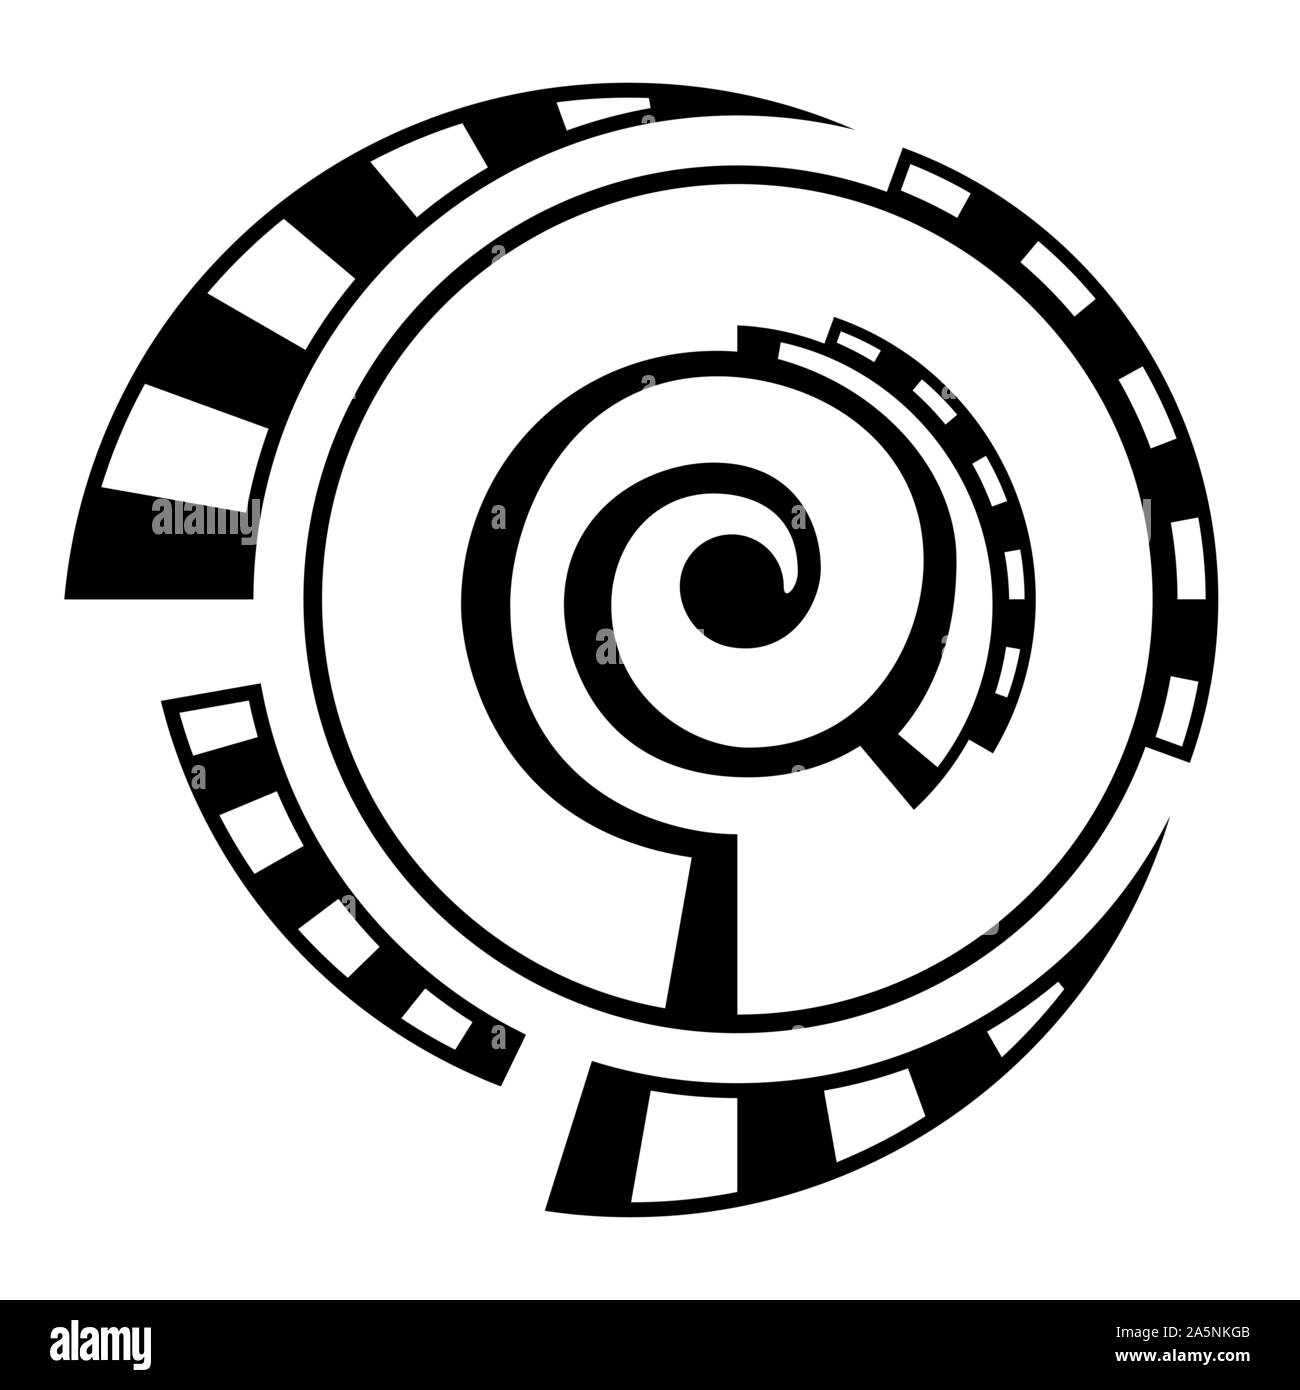 Abstrakte geometrische Symbol auf weißem Hintergrund. Spirale, runde Form. Spirale Element mit gestrichelten Linien, segmentiert. Lineare Logo. Stock Vektor